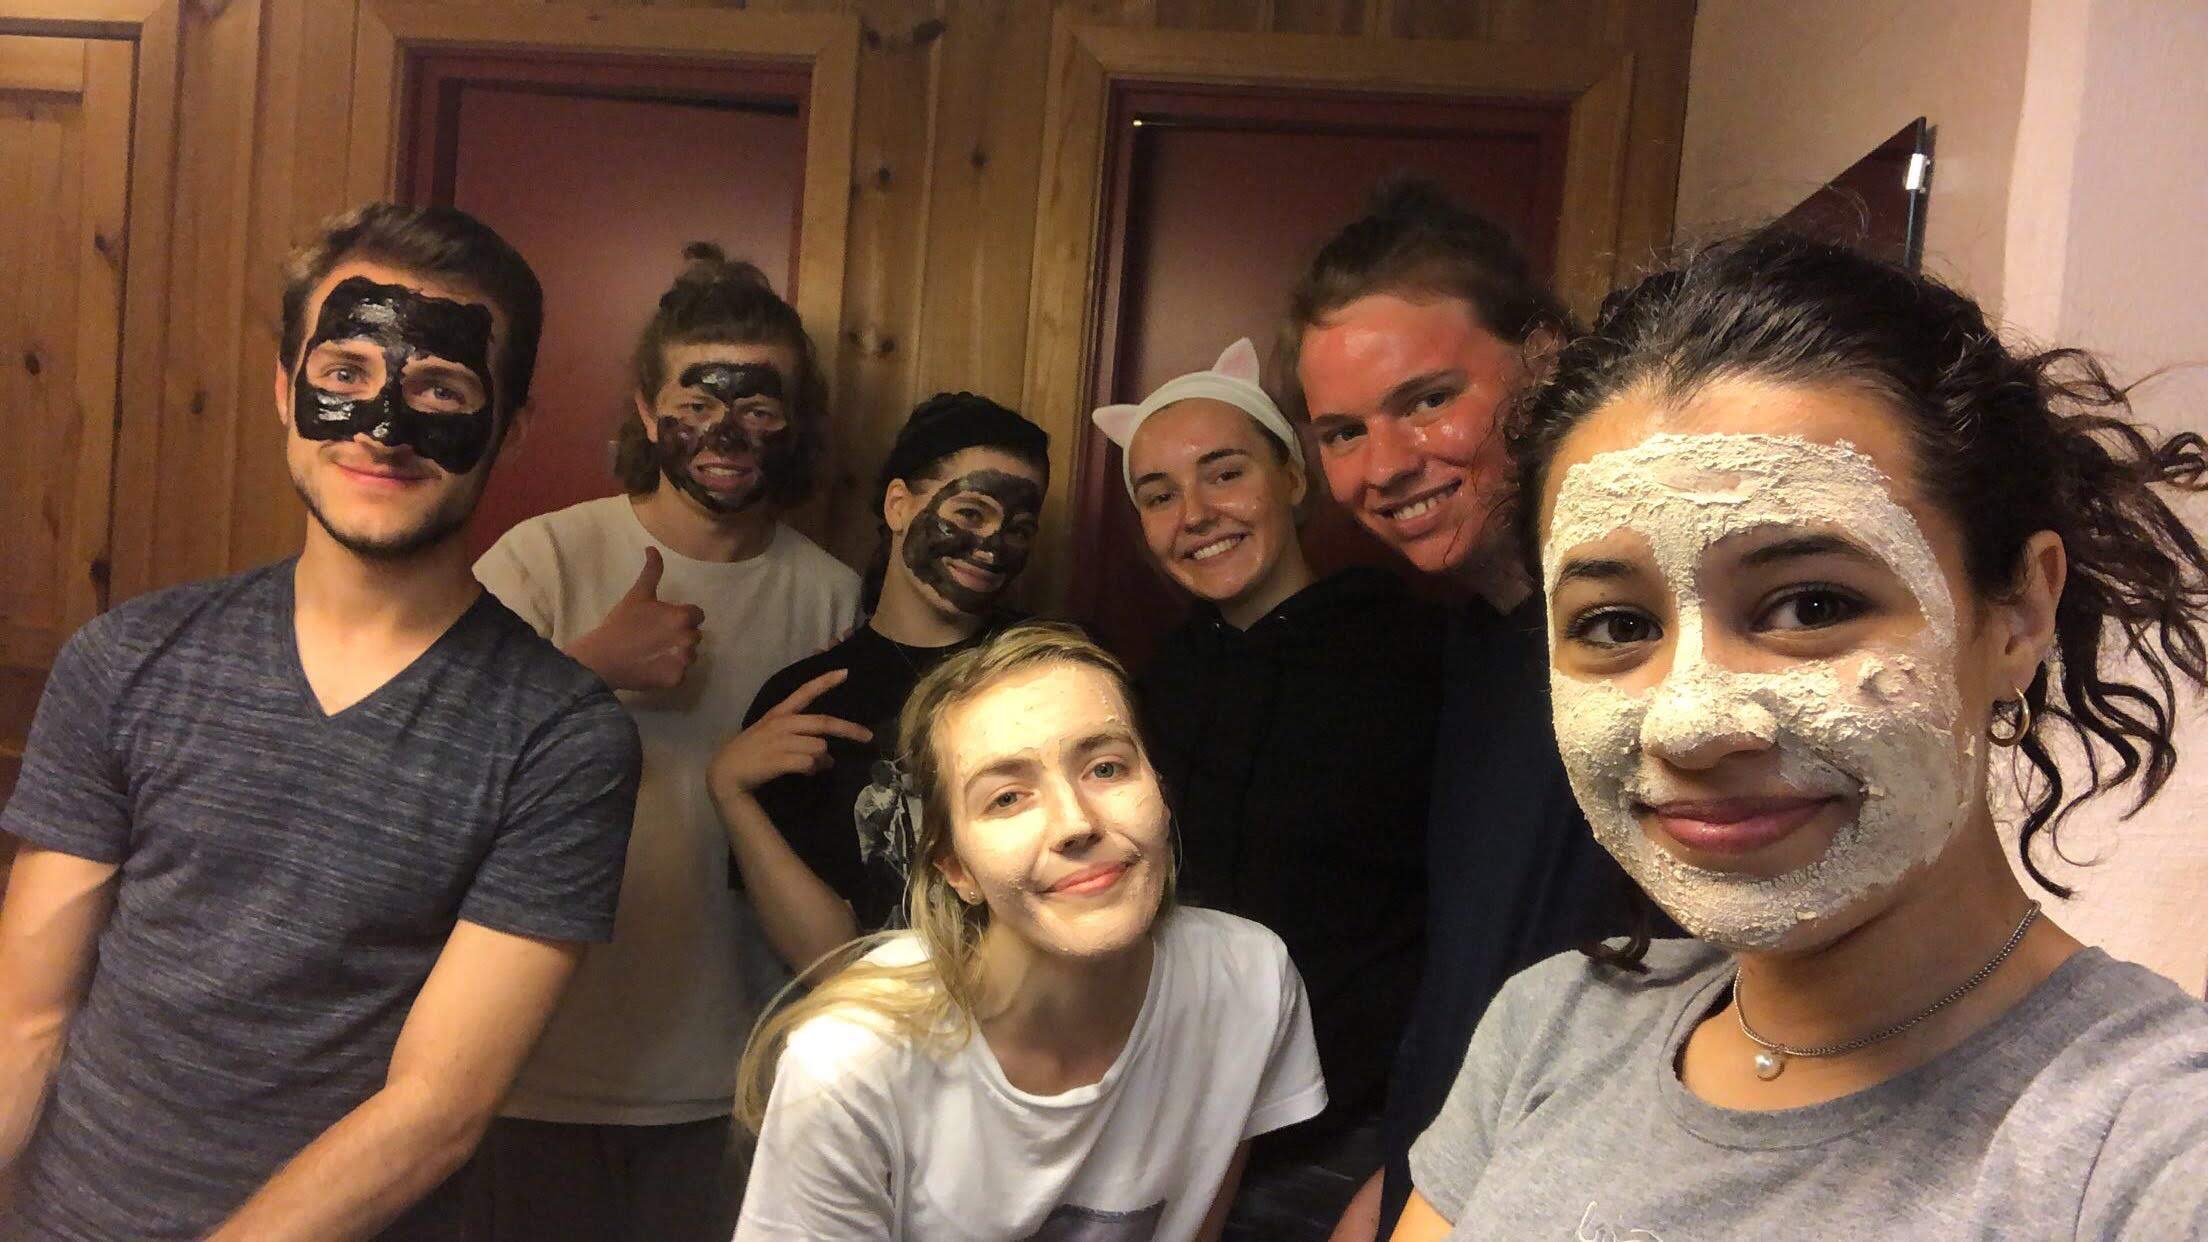 En gruppe elever ser i kameraet med ansiktsmasker på.